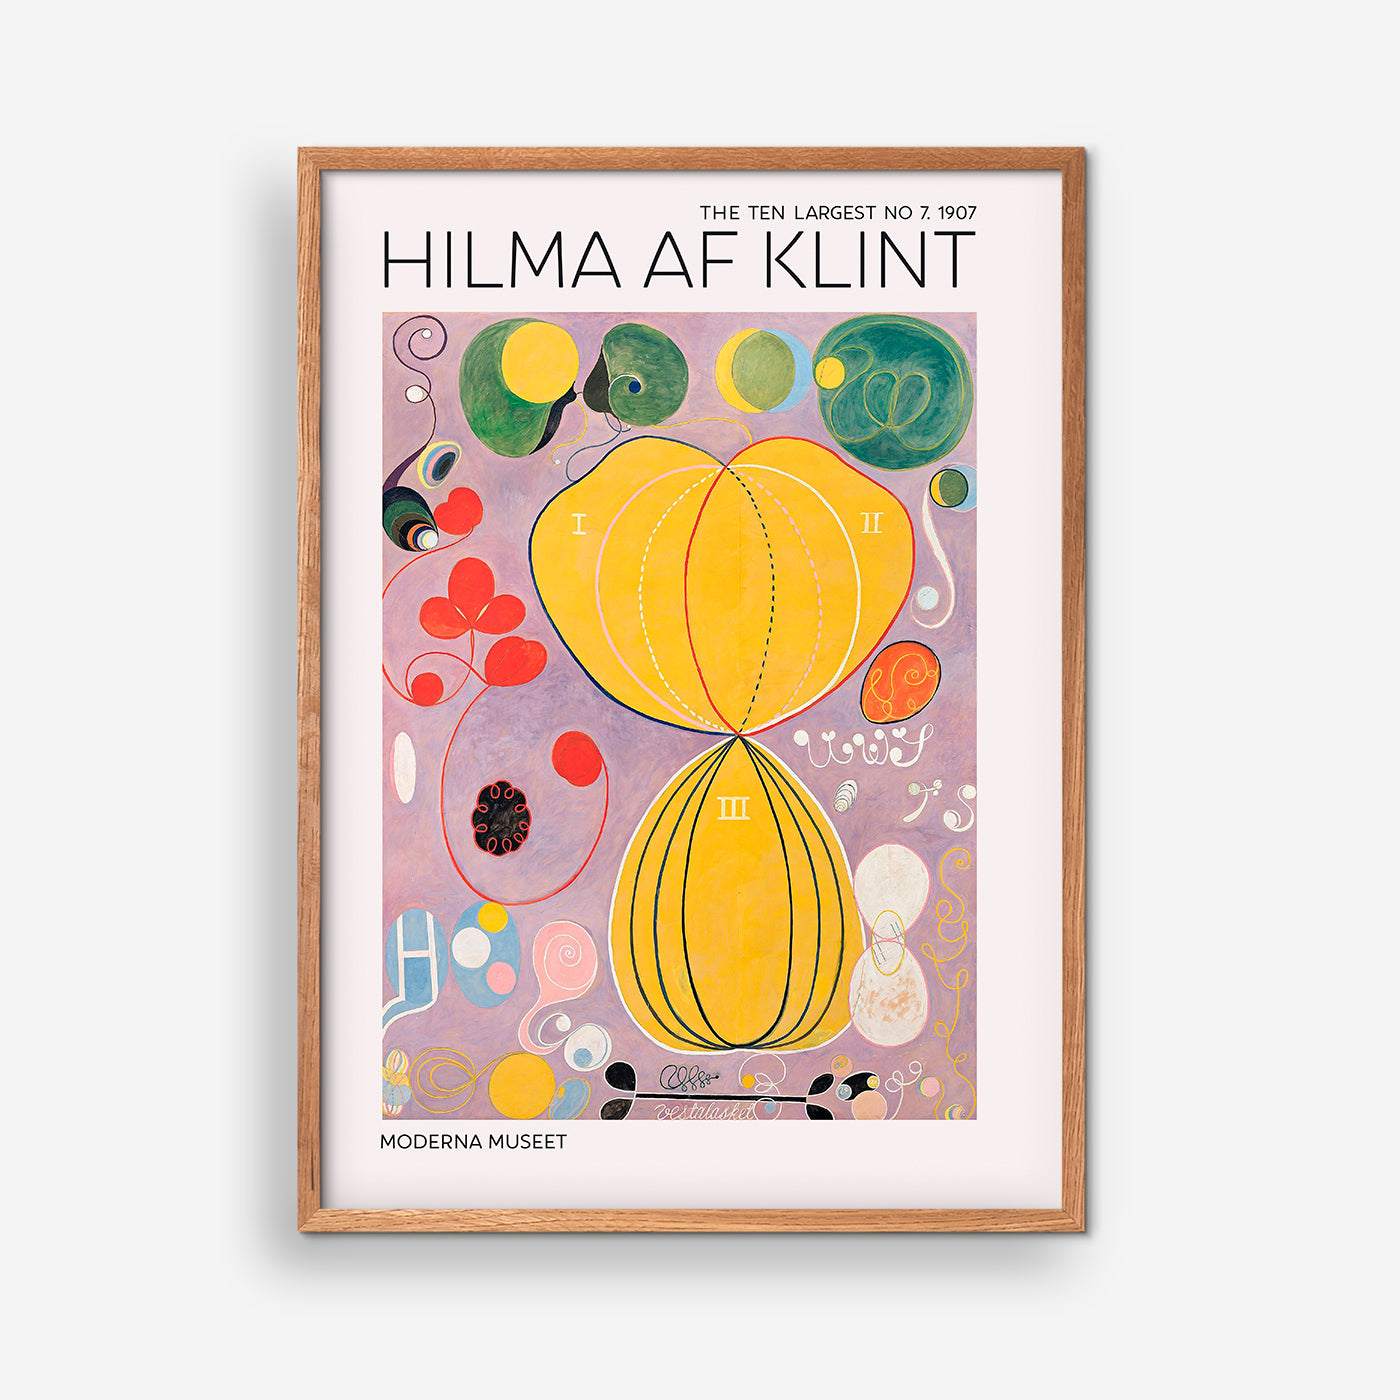 The Ten Largest NO. 7 - Hilma Af Klint